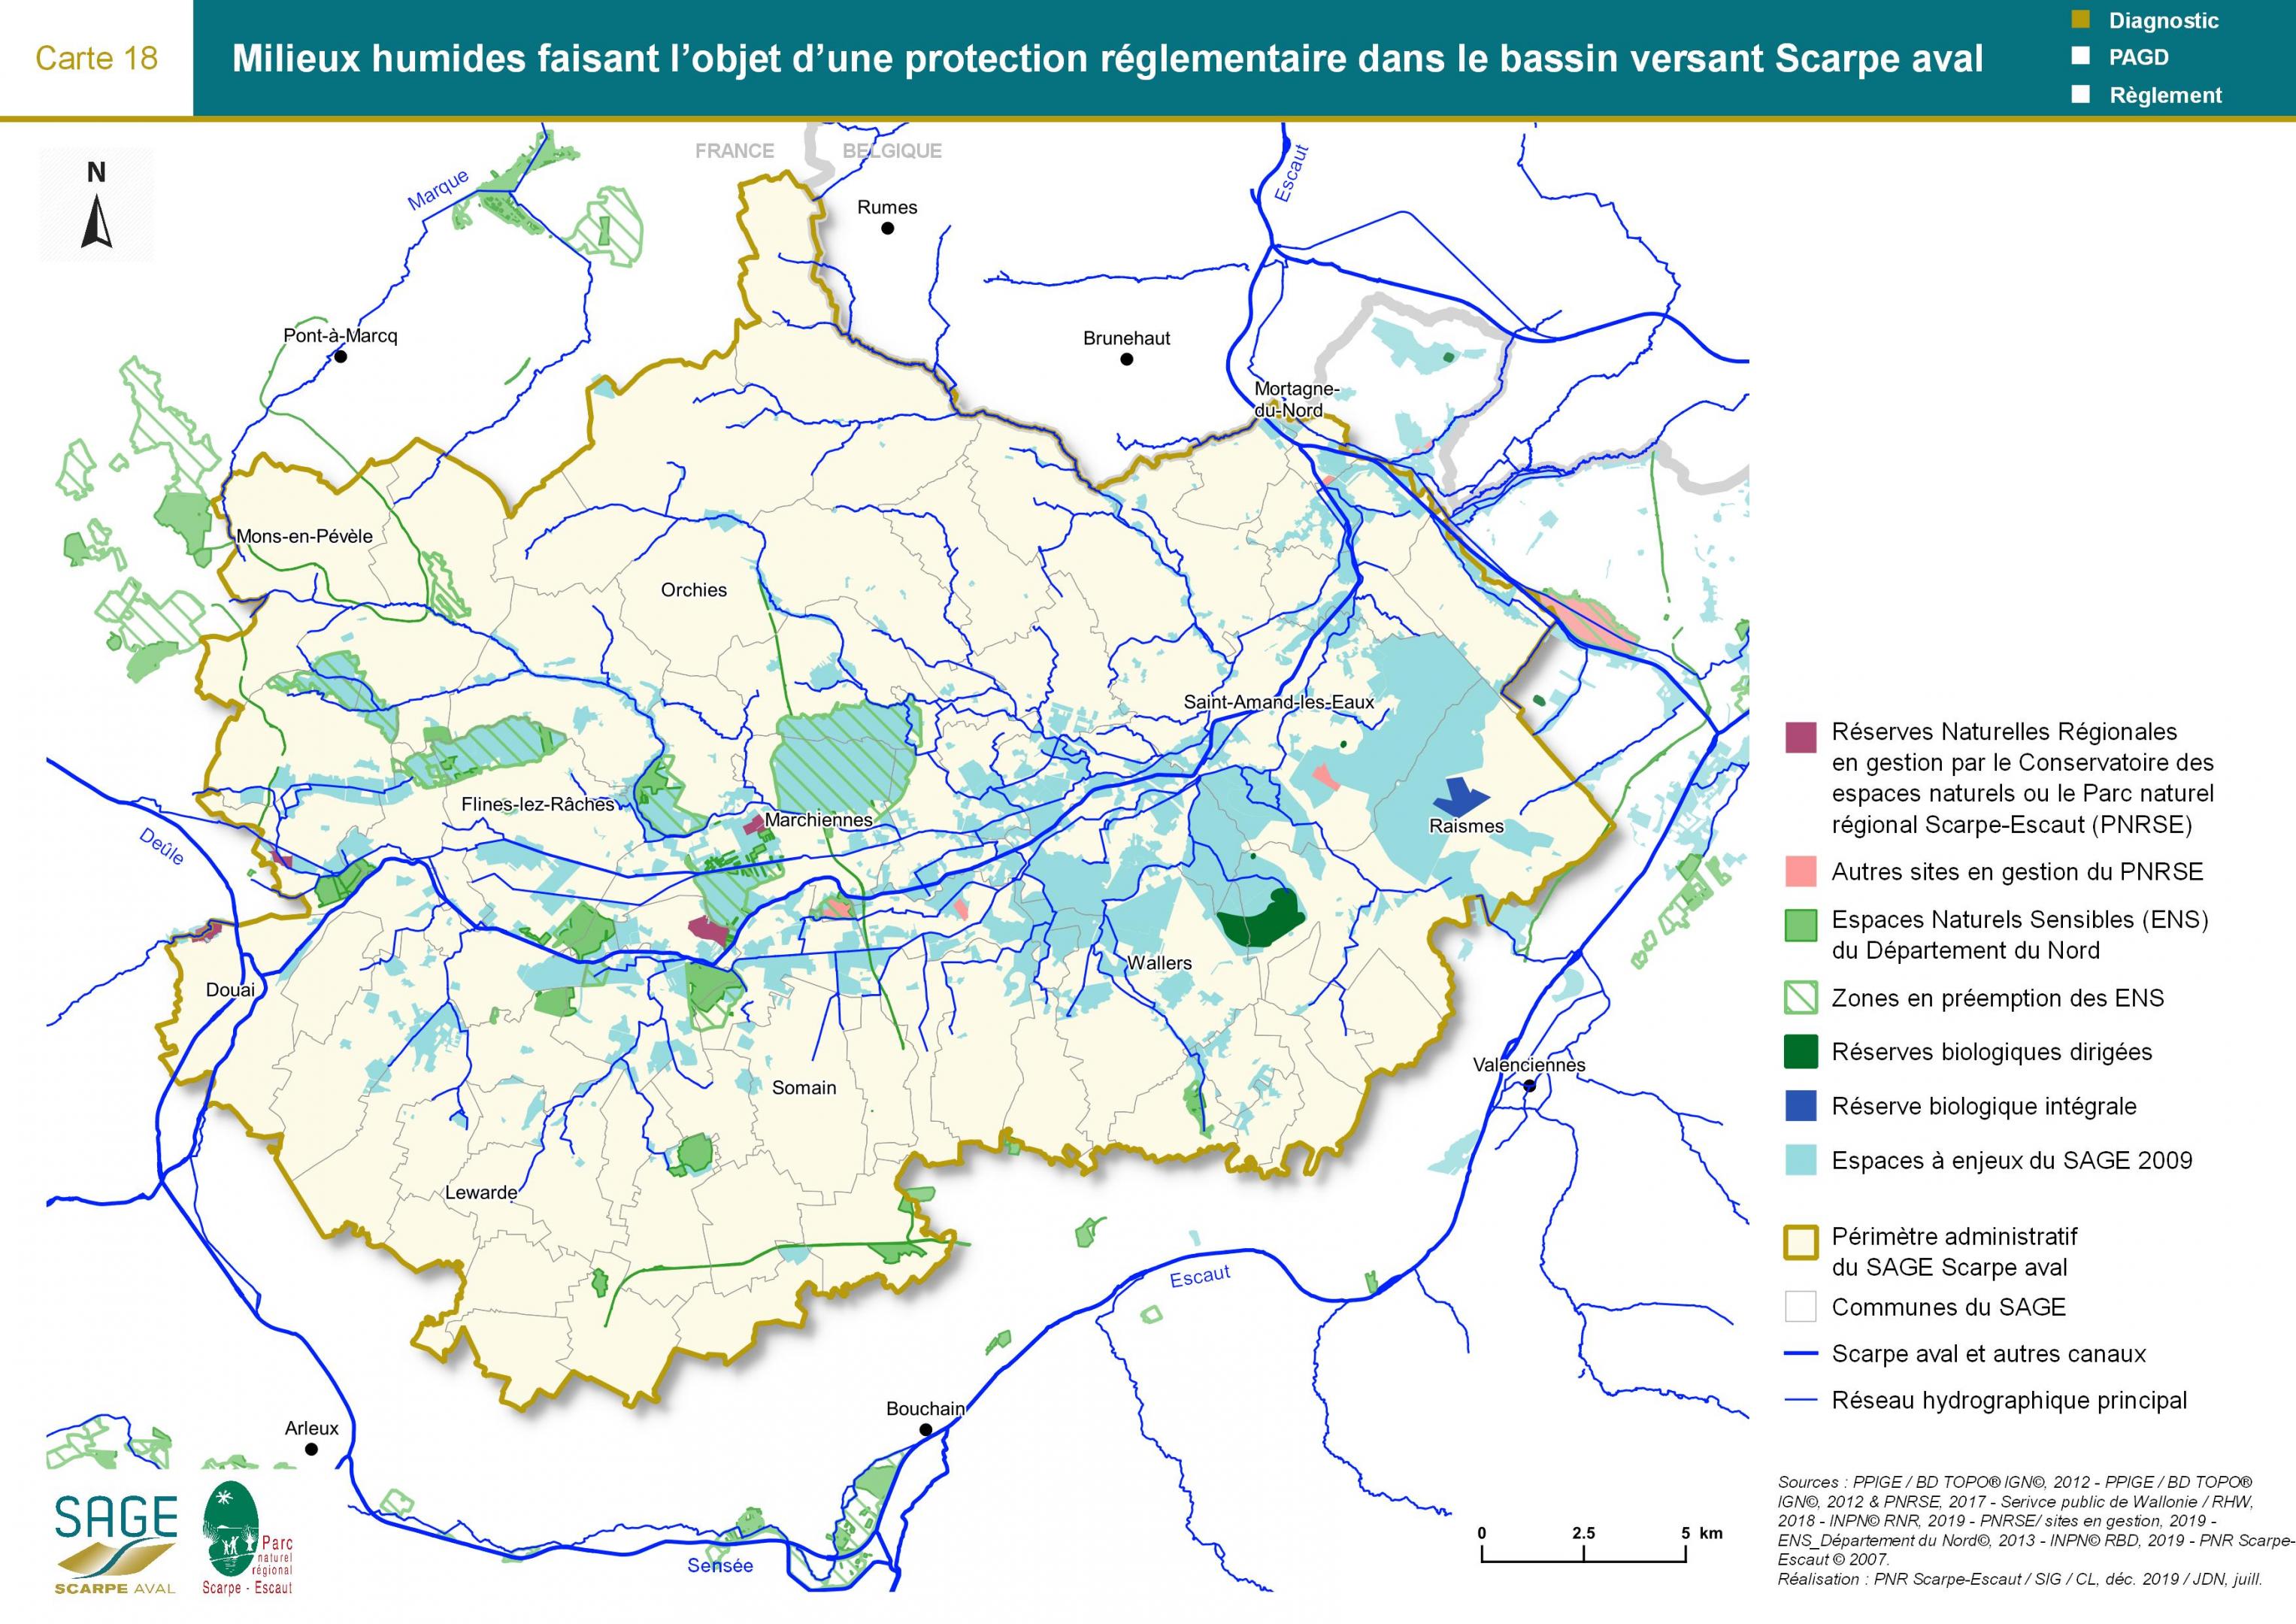 Etat des lieux - Carte 18 : Milieux humides faisant l’objet d’une protection réglementaire dans le bassin versant Scarpe aval